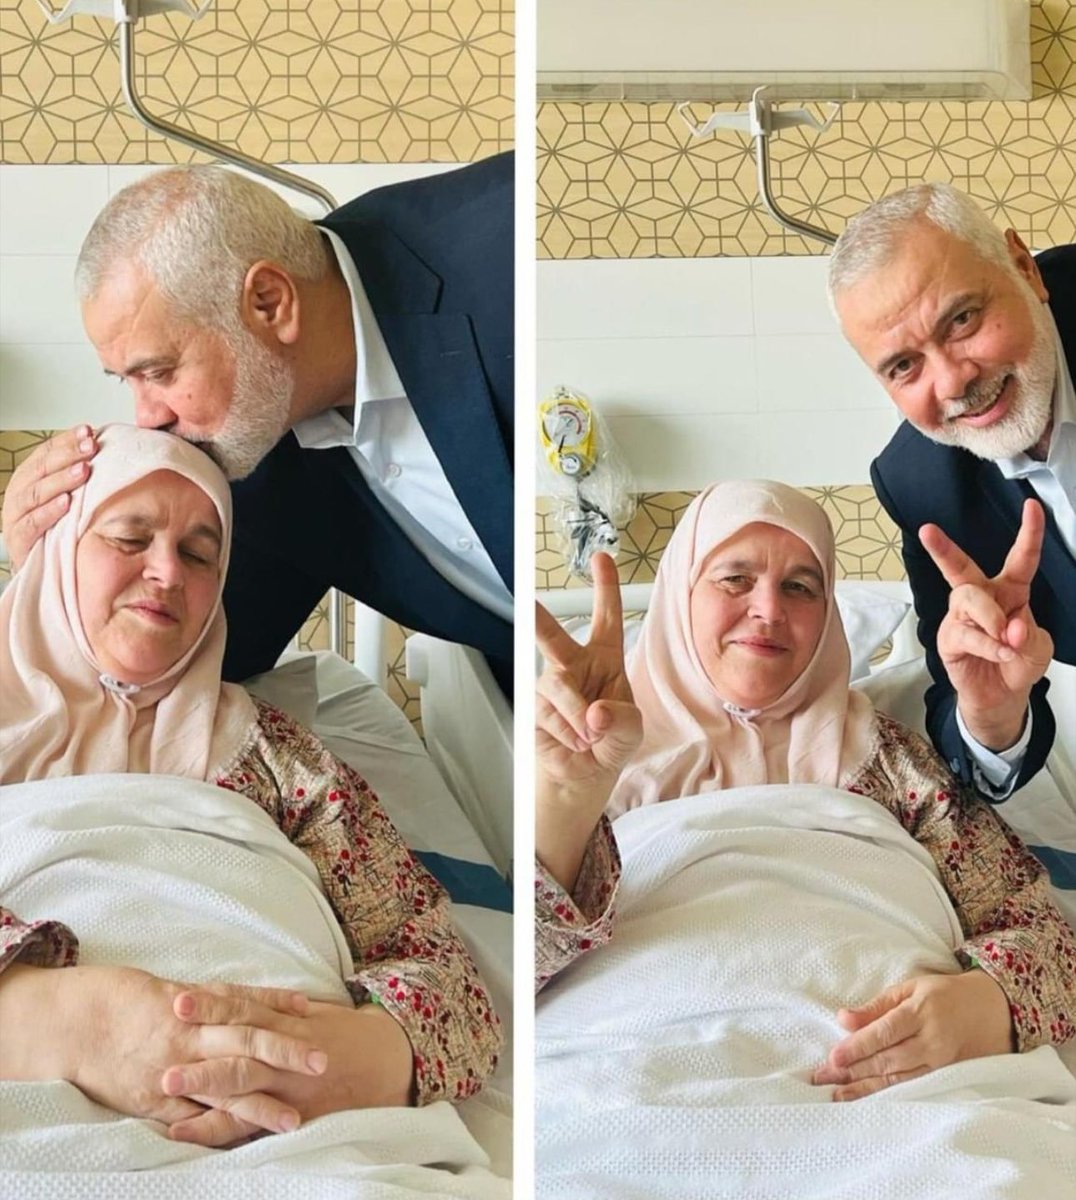 اسماعیل ھنیہ کی اہلیہ ام عبدالسلام کو عید سے چند روز قبل طبیعت کی خرابی کے باعث ہسپتال میں داخل کرایا گیا تھا۔ حماس کے سیاسی بیورو چیف نے ان کے پاس جا کر شہادتوں کی خبر دی، دونوں نے اس حال پر صبر کیا، اللہ کا شکر ادا کیا، اسماعیل ھنیہ نے وضو کیا اور اللہ تعالیٰ کا شکر ادا کرتے…